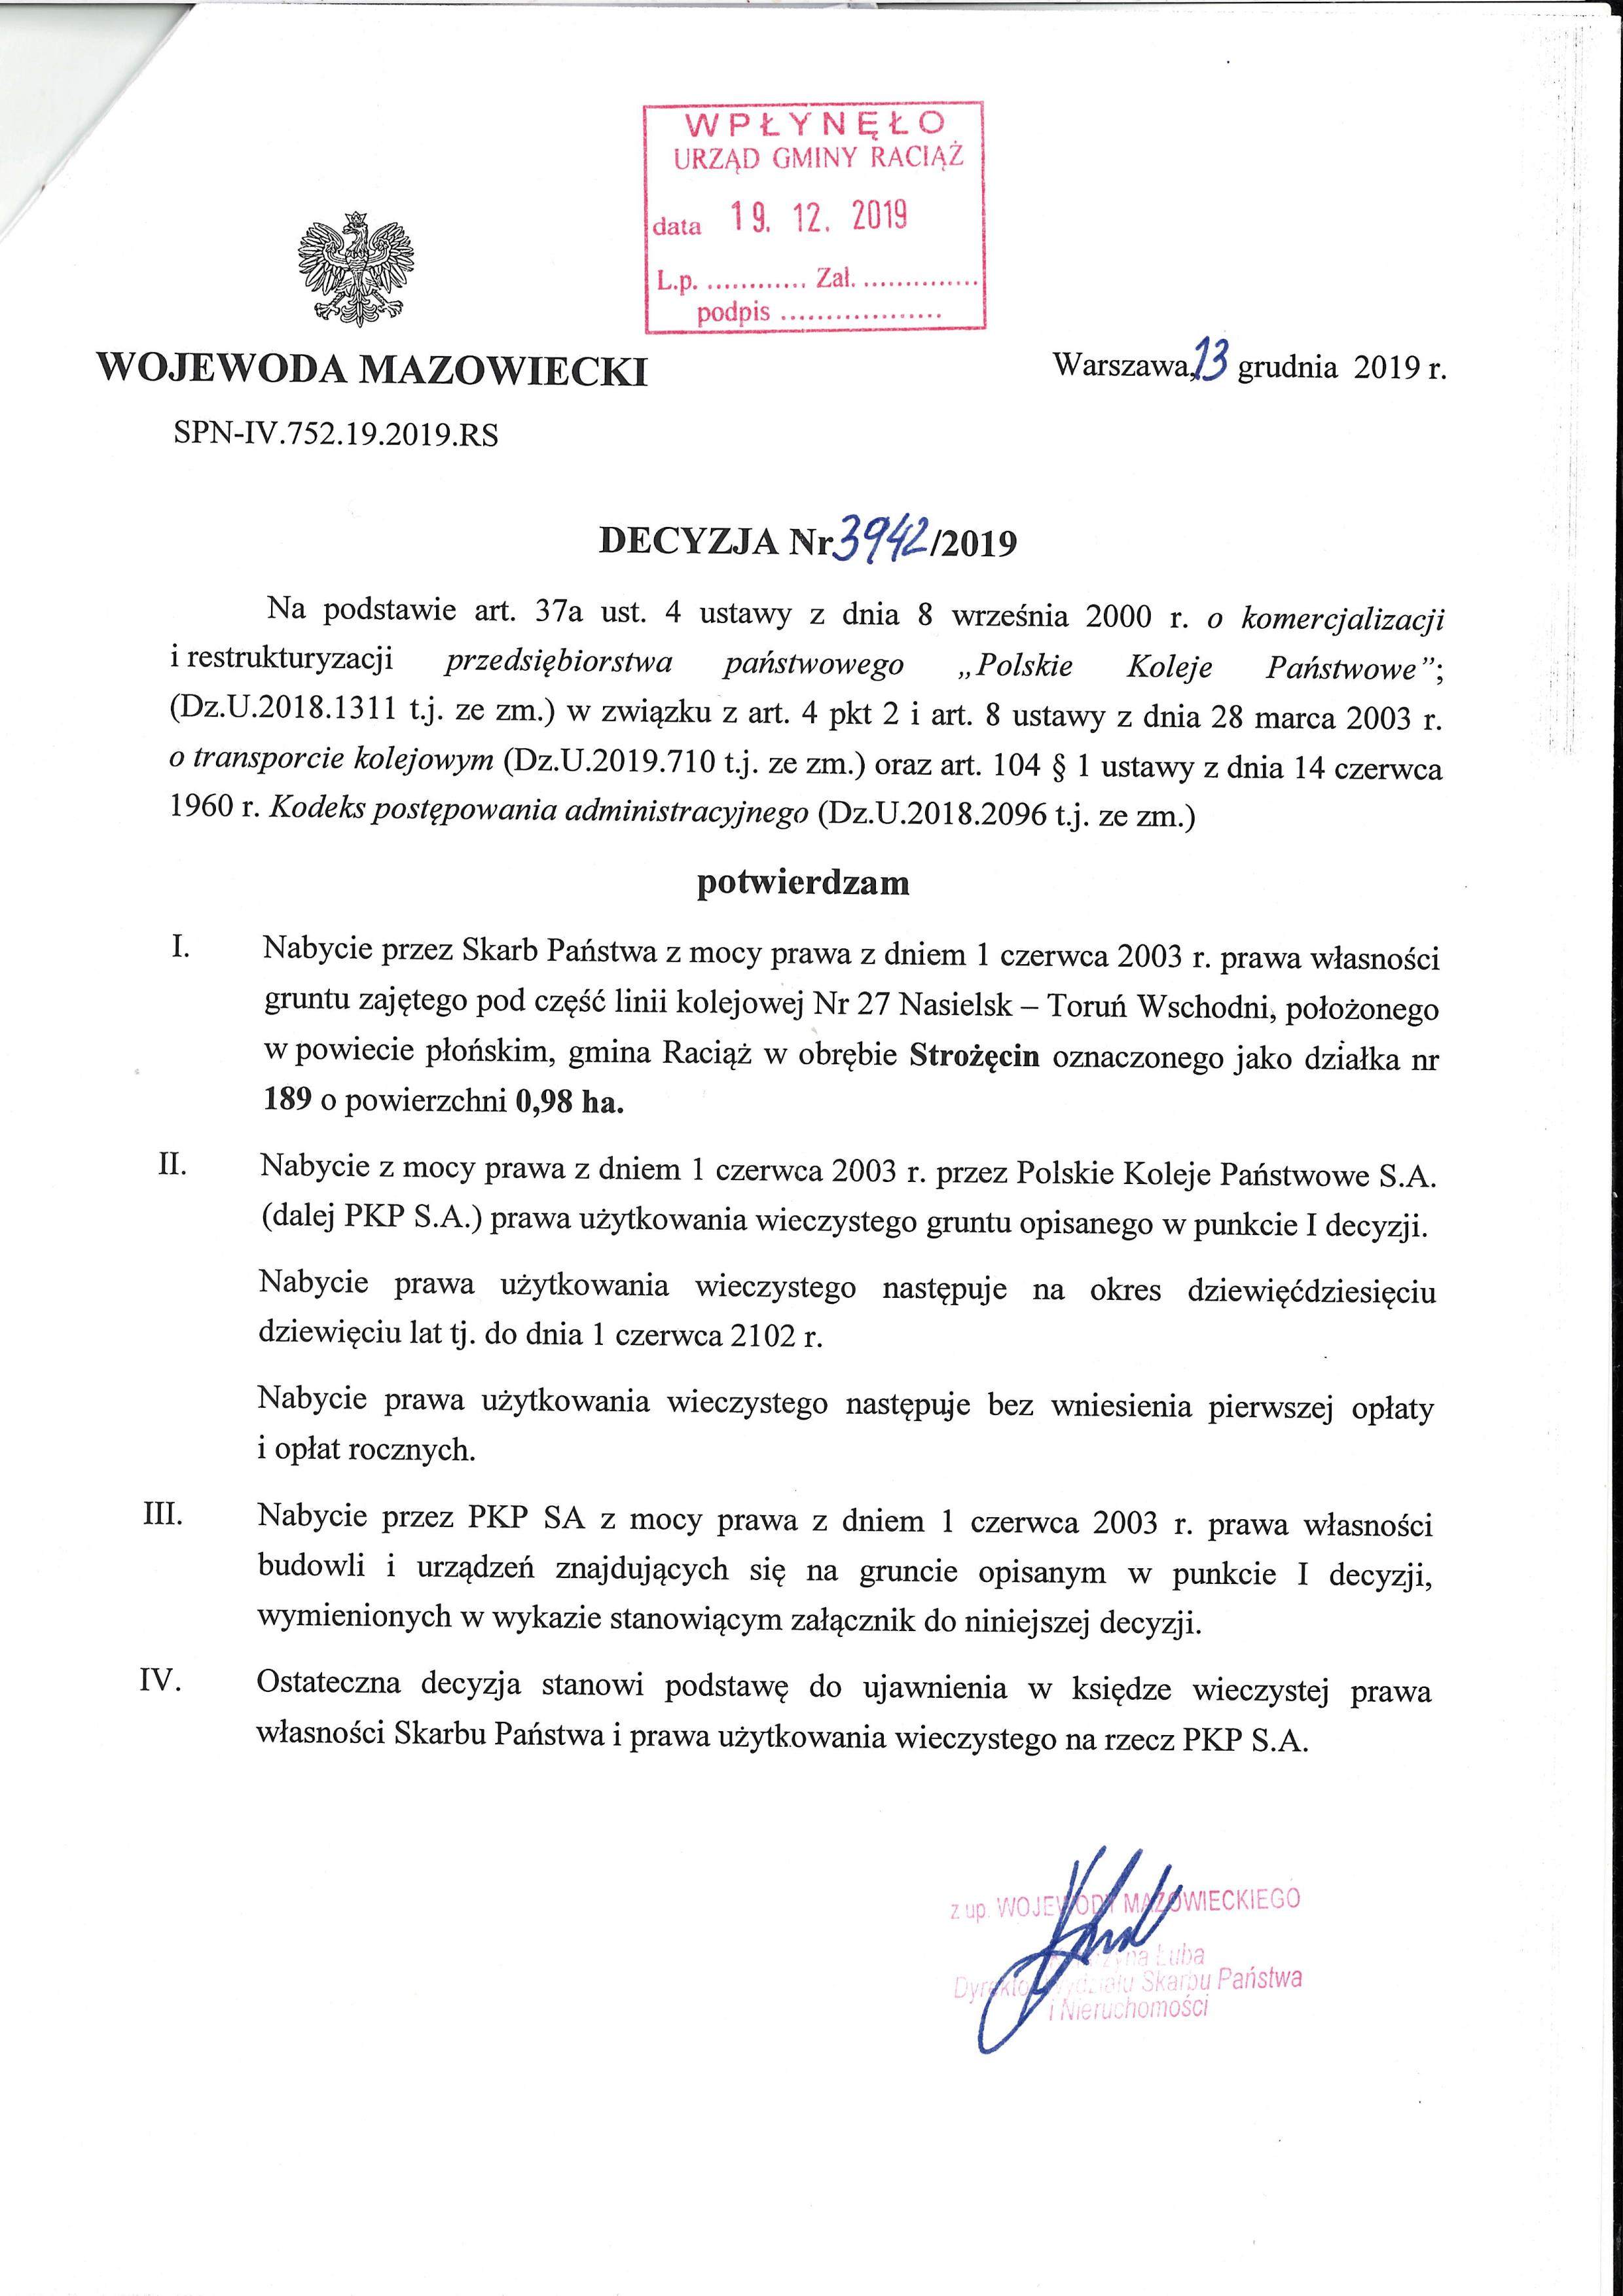 Decyzja Wojewody Mazowieckiego z dnia 23.12.2019 r. W sprawie nabycia przez Skarb Państwa prawa